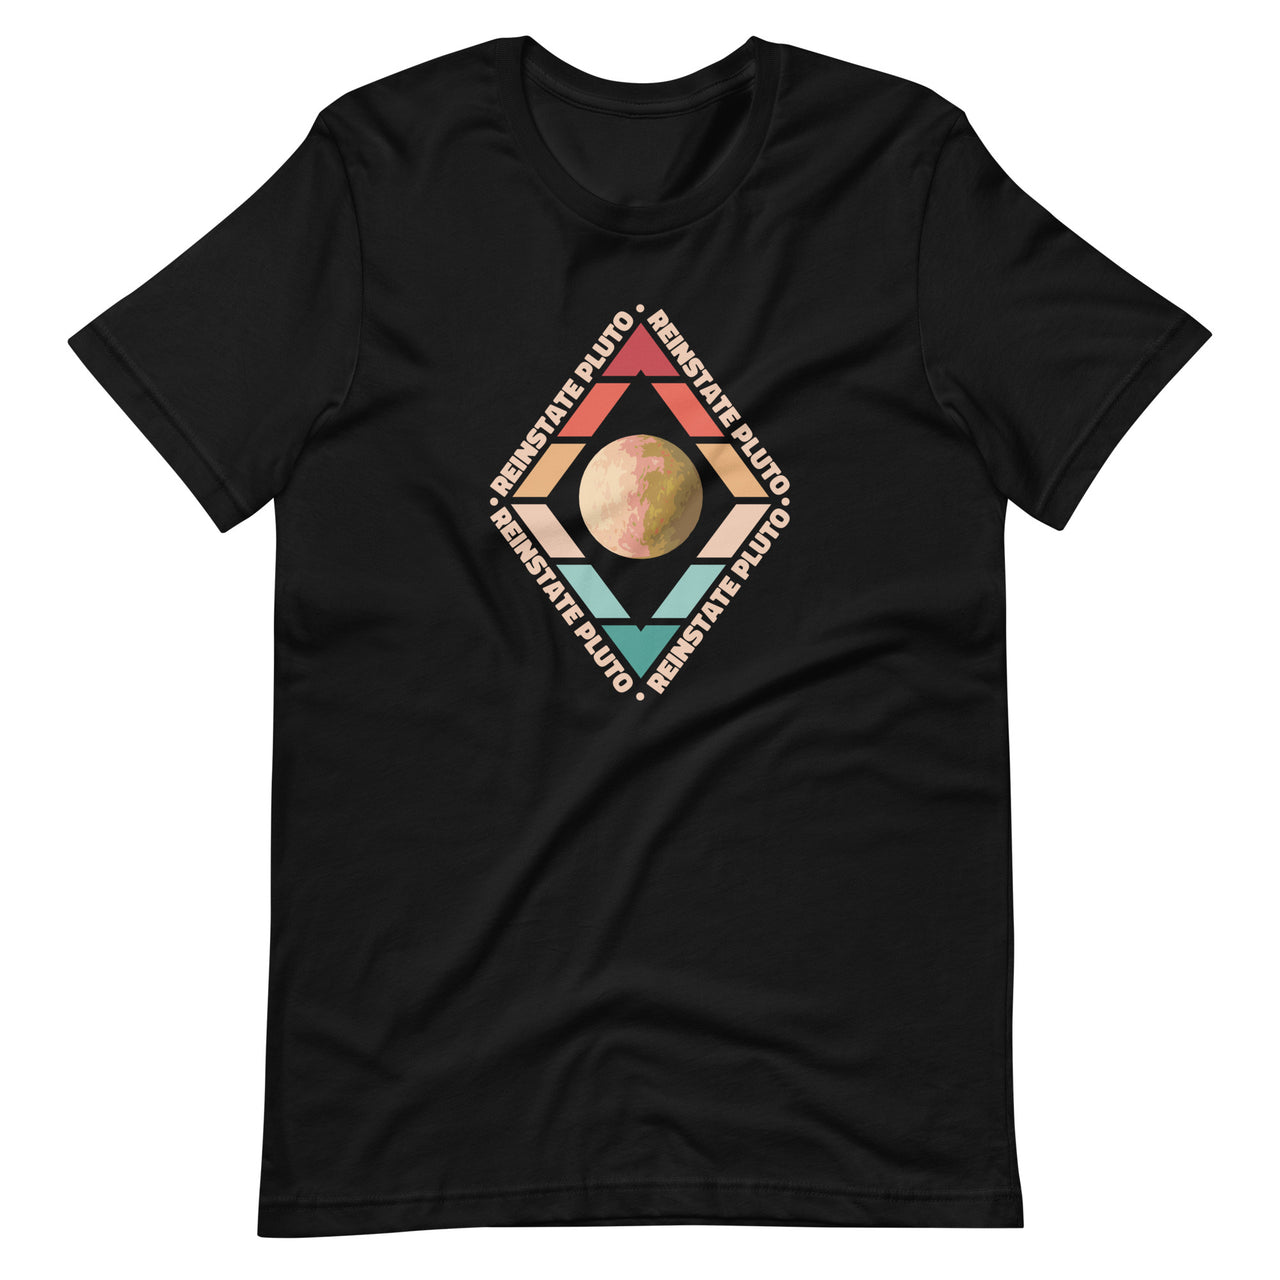 Reinstate Pluto T-Shirt